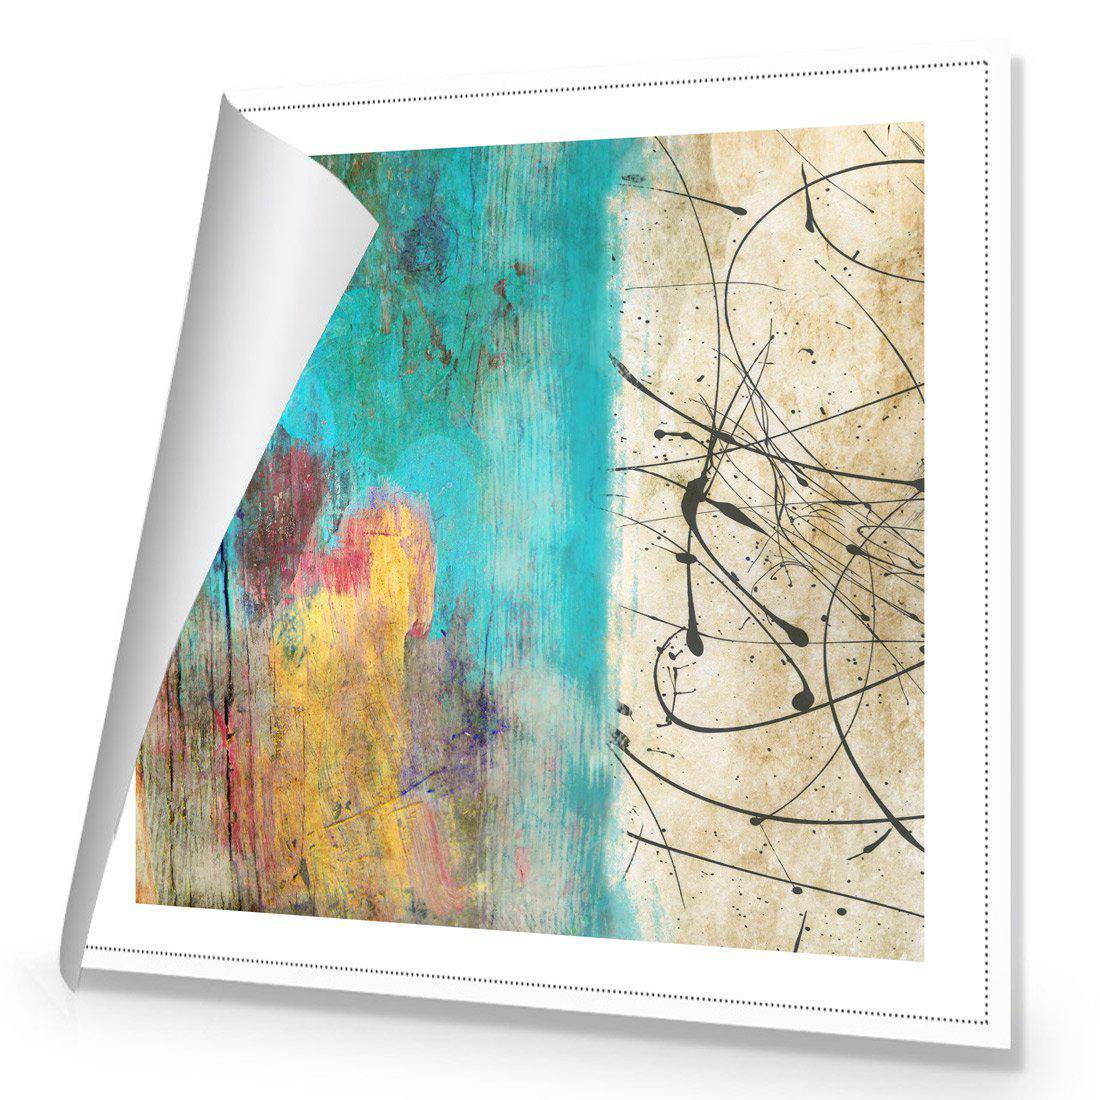 Painted Grunge Splatter Canvas Art-Canvas-Wall Art Designs-30x30cm-Rolled Canvas-Wall Art Designs